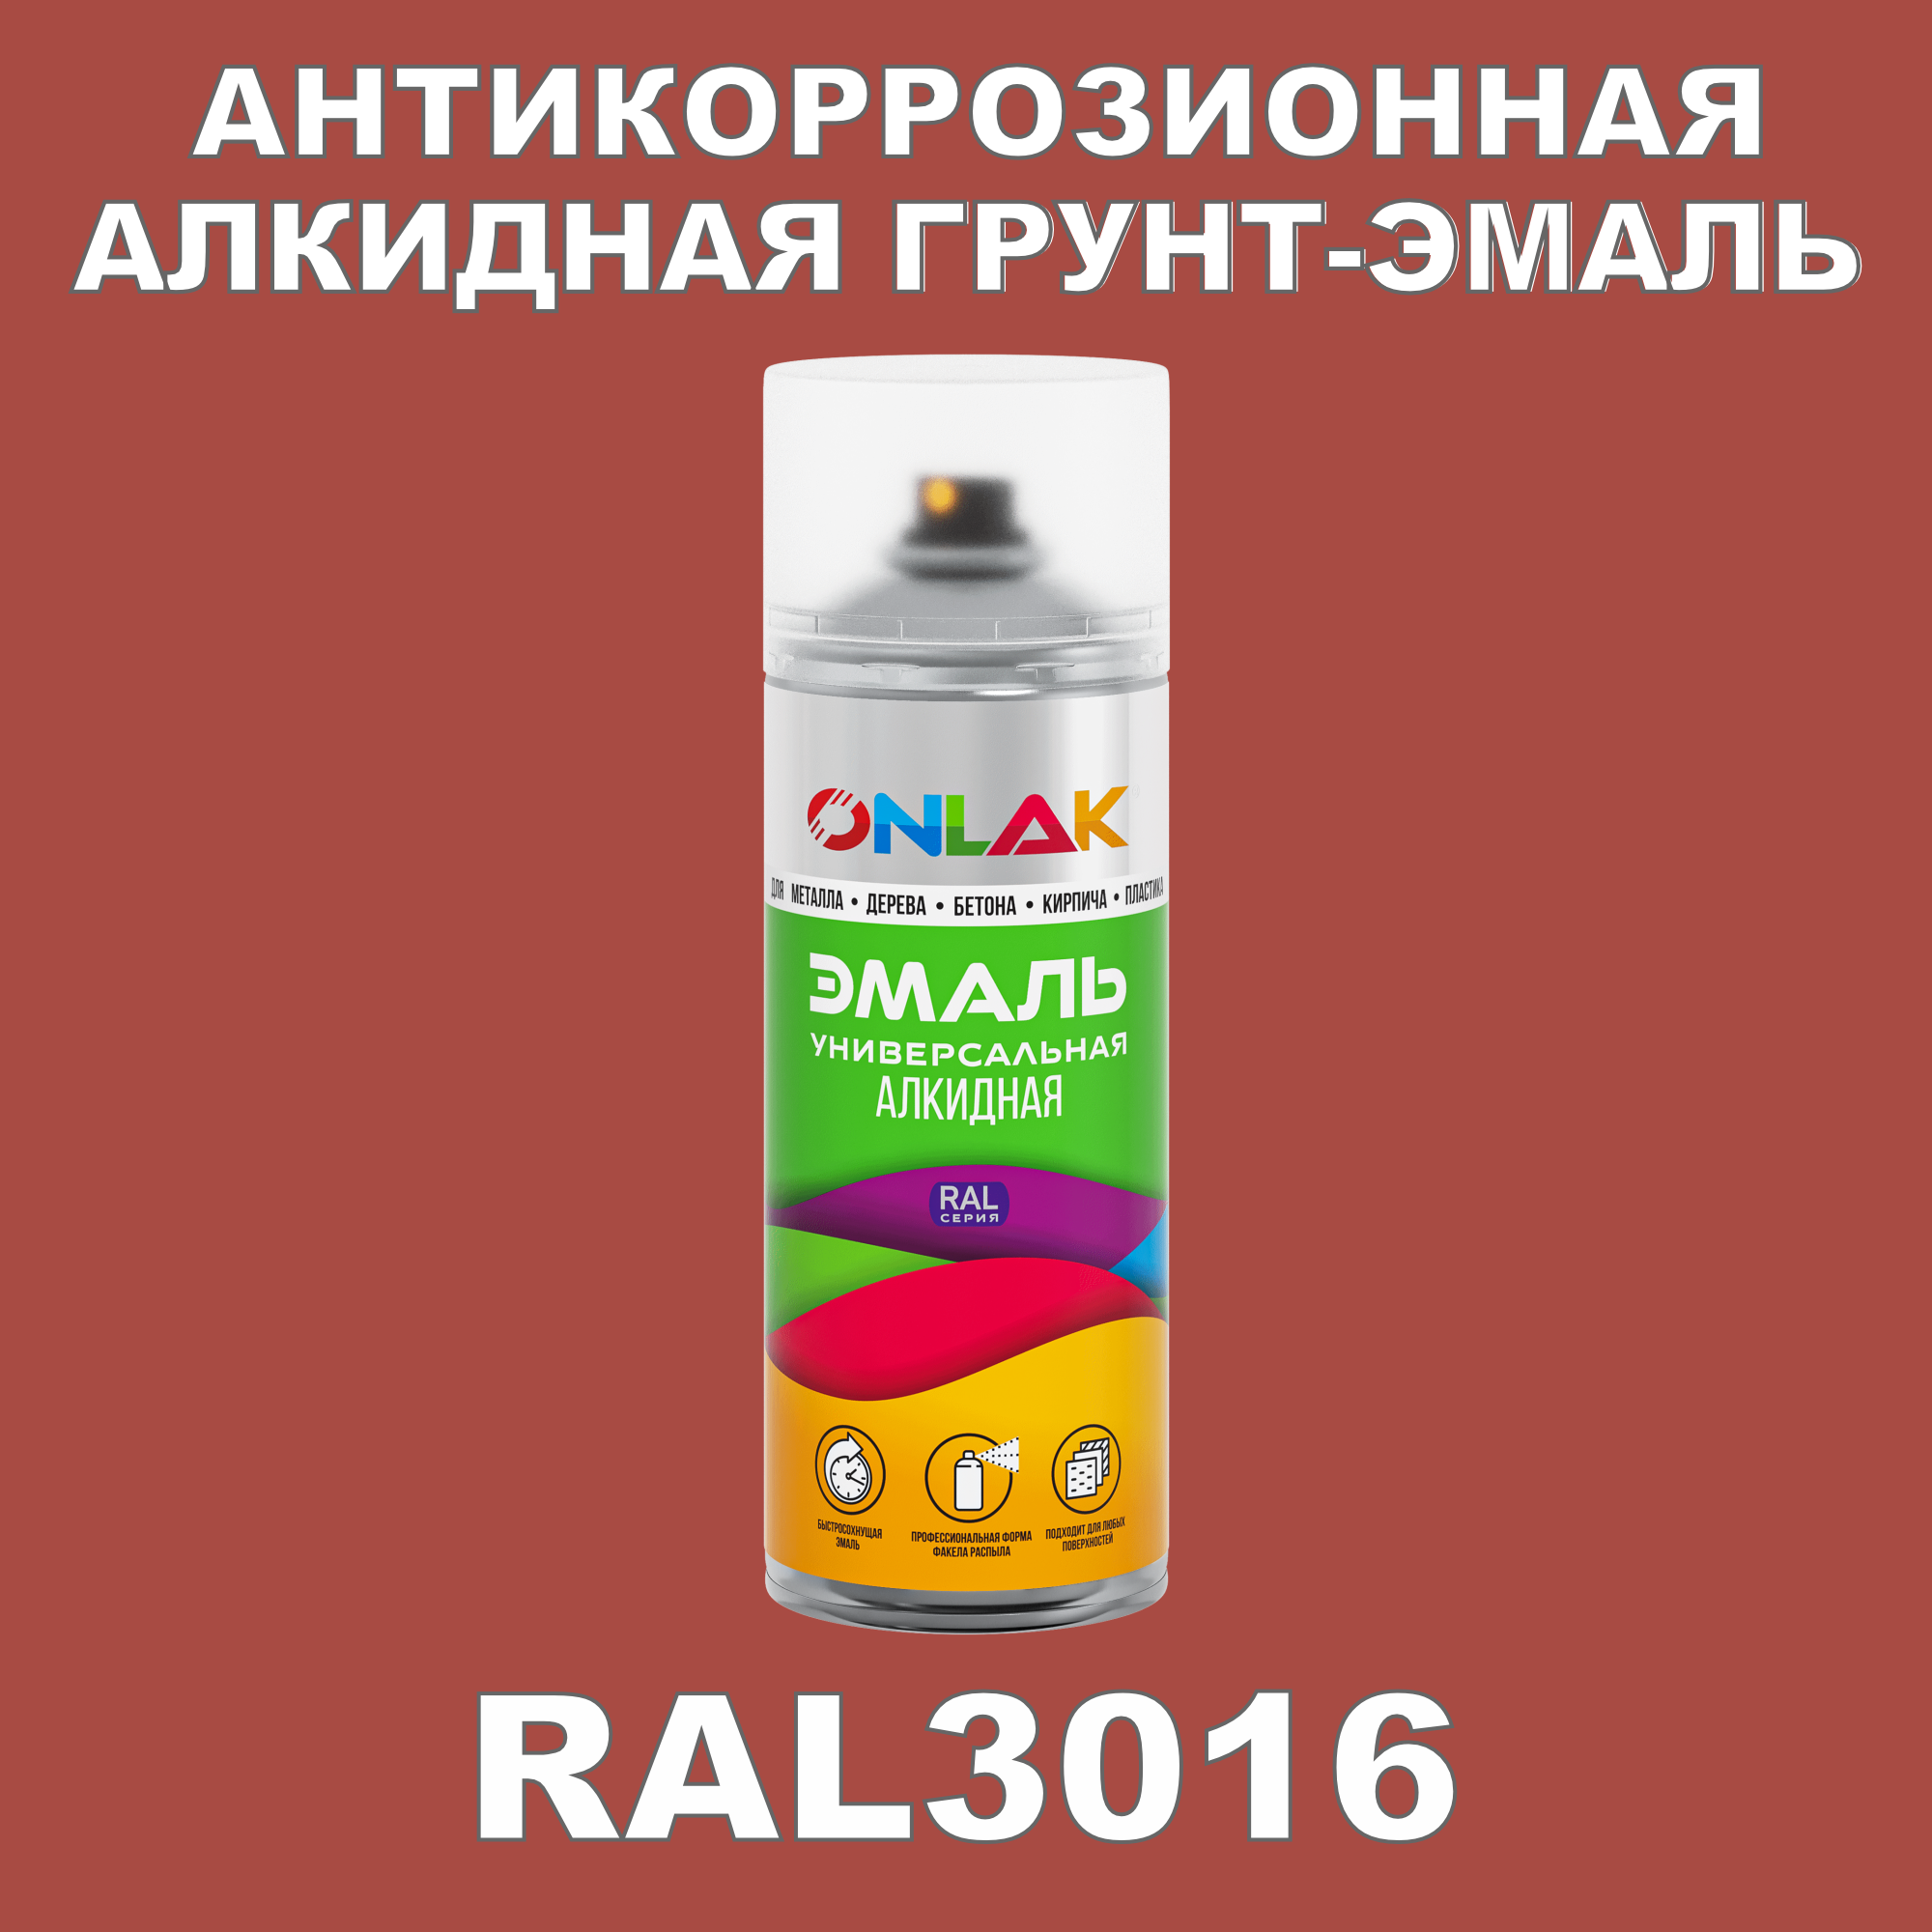 Антикоррозионная грунт-эмаль ONLAK RAL3016 полуматовая для металла и защиты от ржавчины